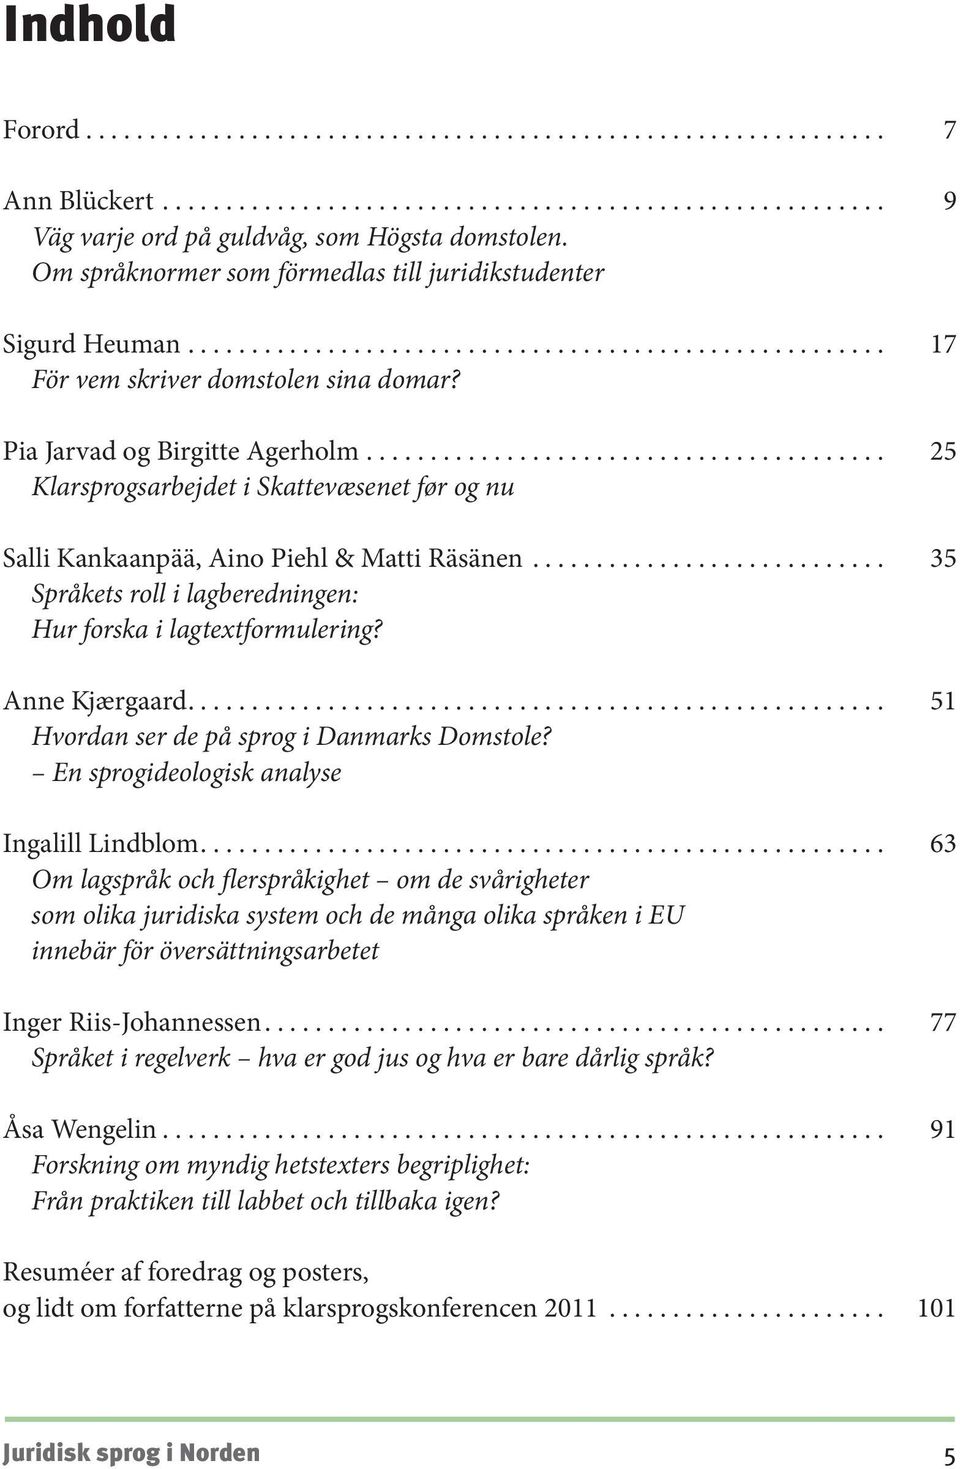 Anne Kjærgaard.... 51 Hvordan ser de på sprog i Danmarks Domstole? En sprogideologisk analyse Ingalill Lindblom.